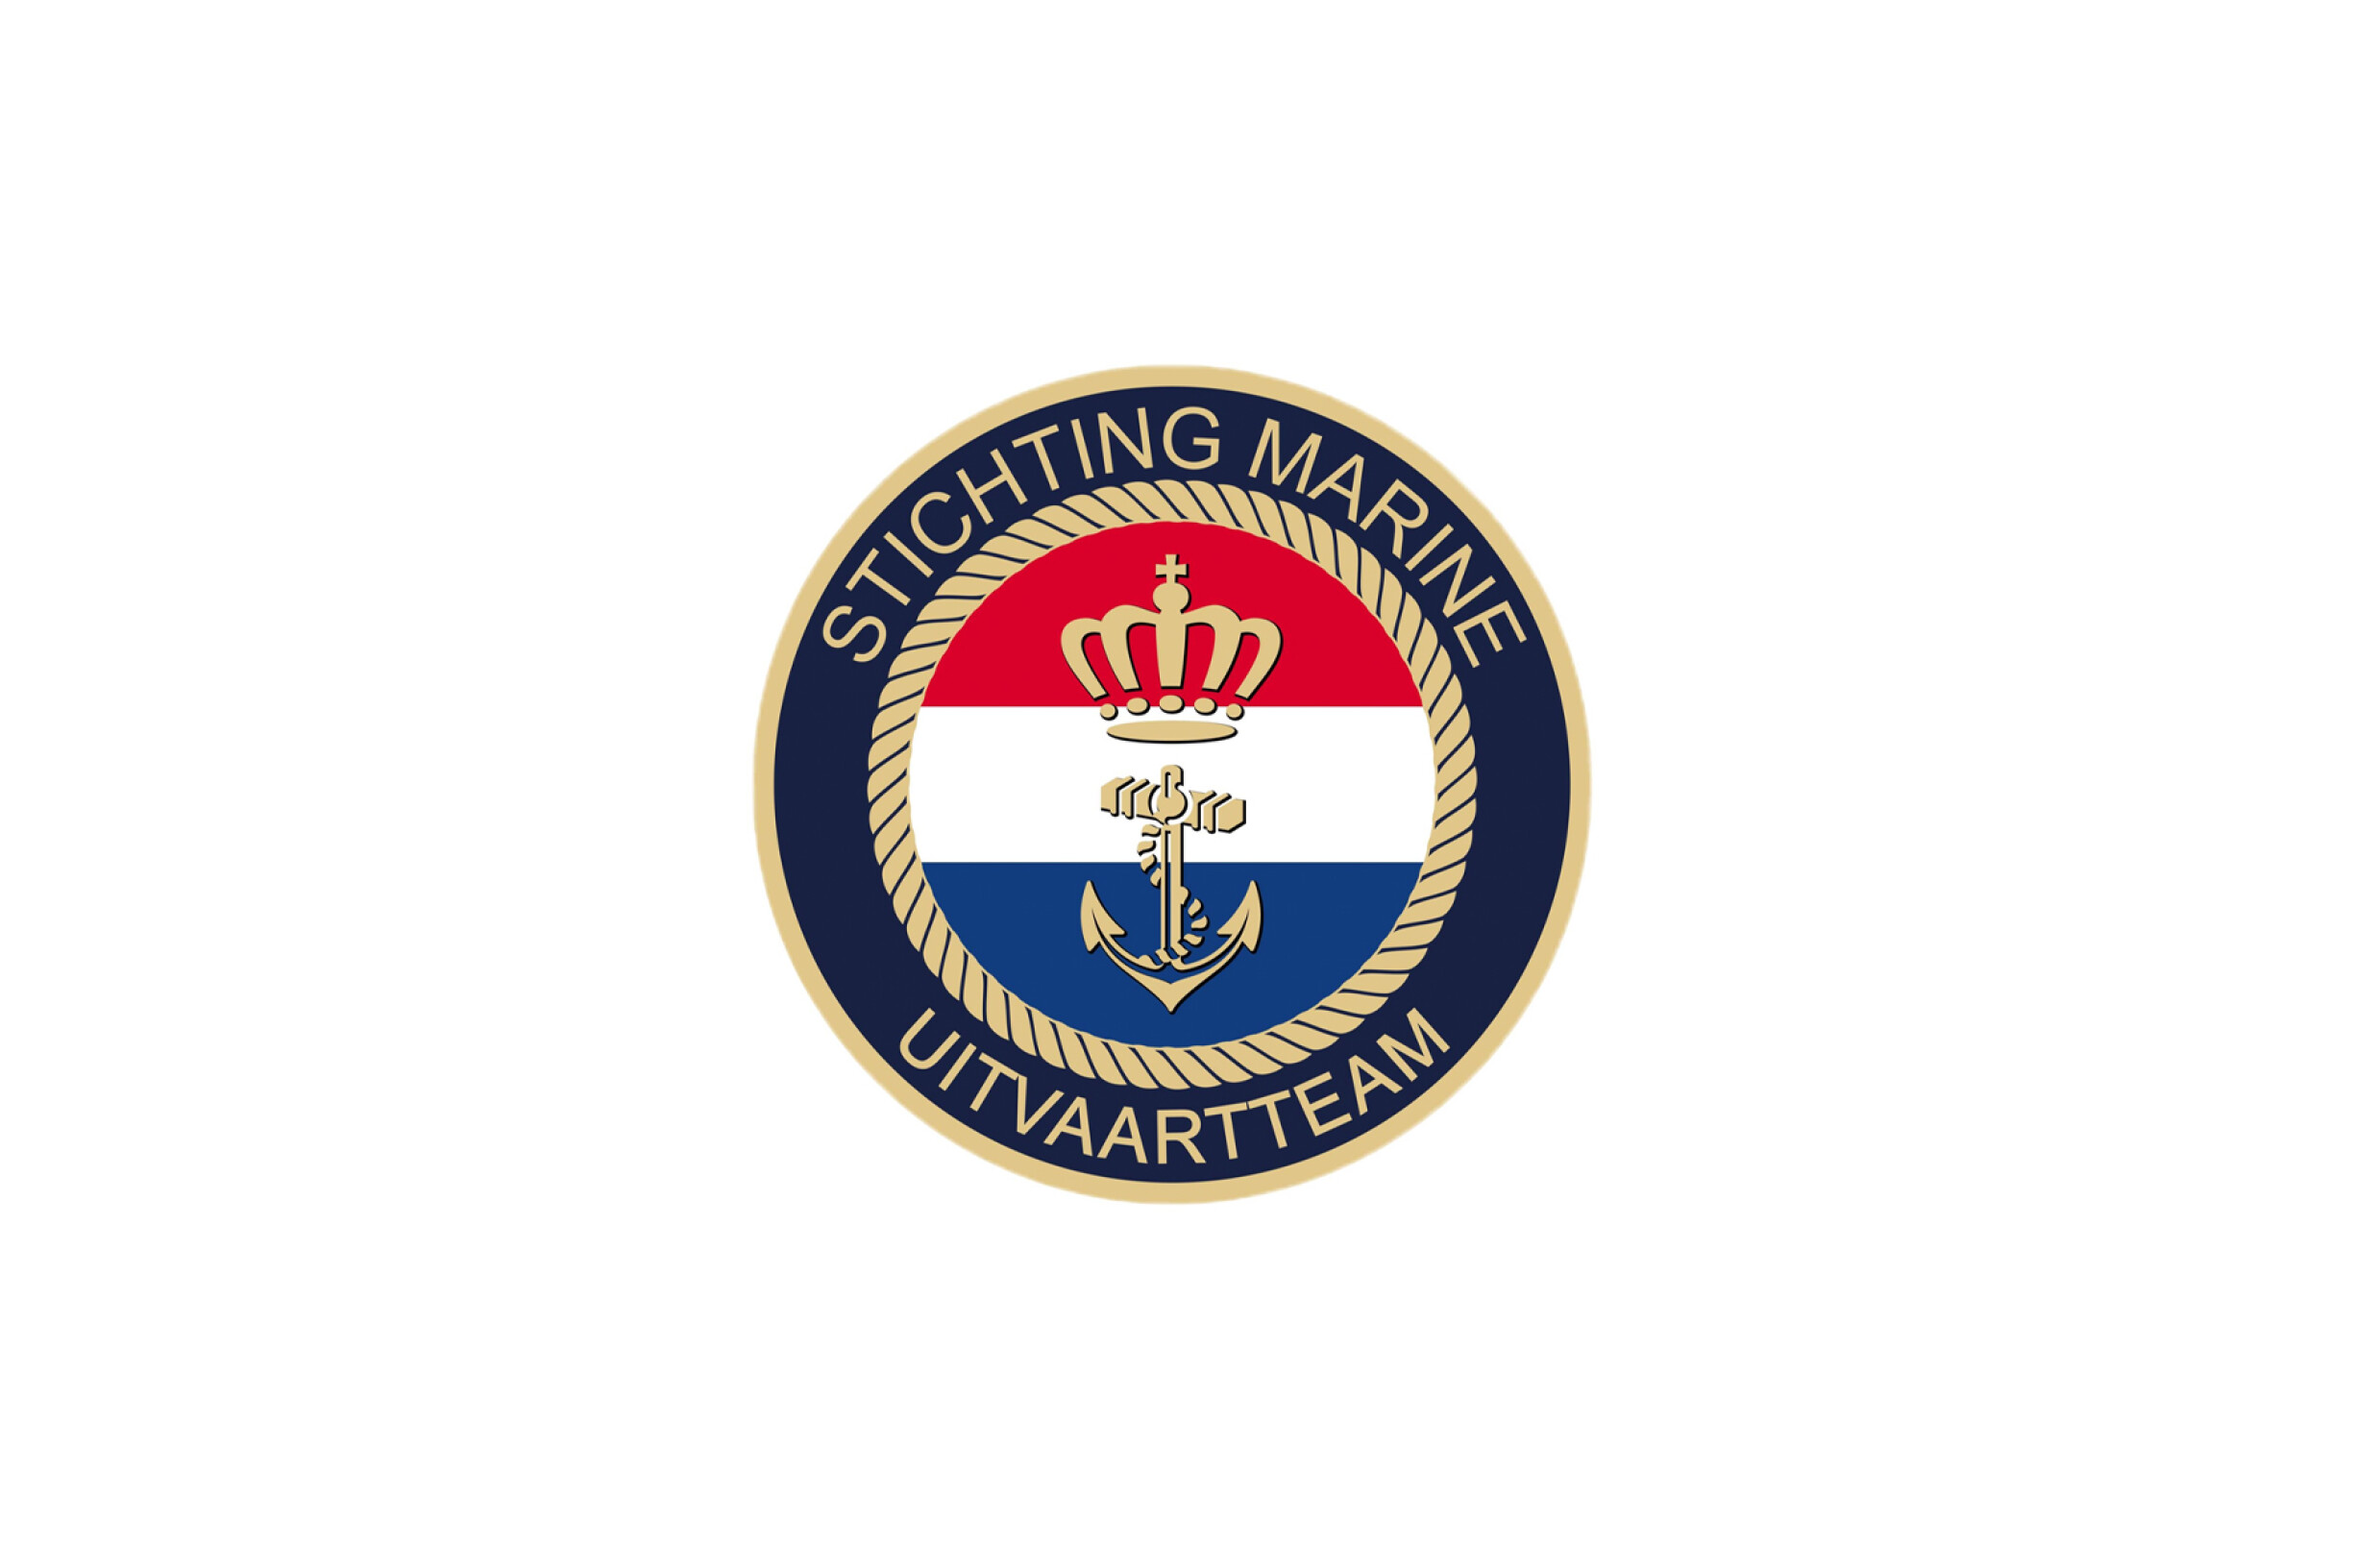 Stichting marine uitvaartteam